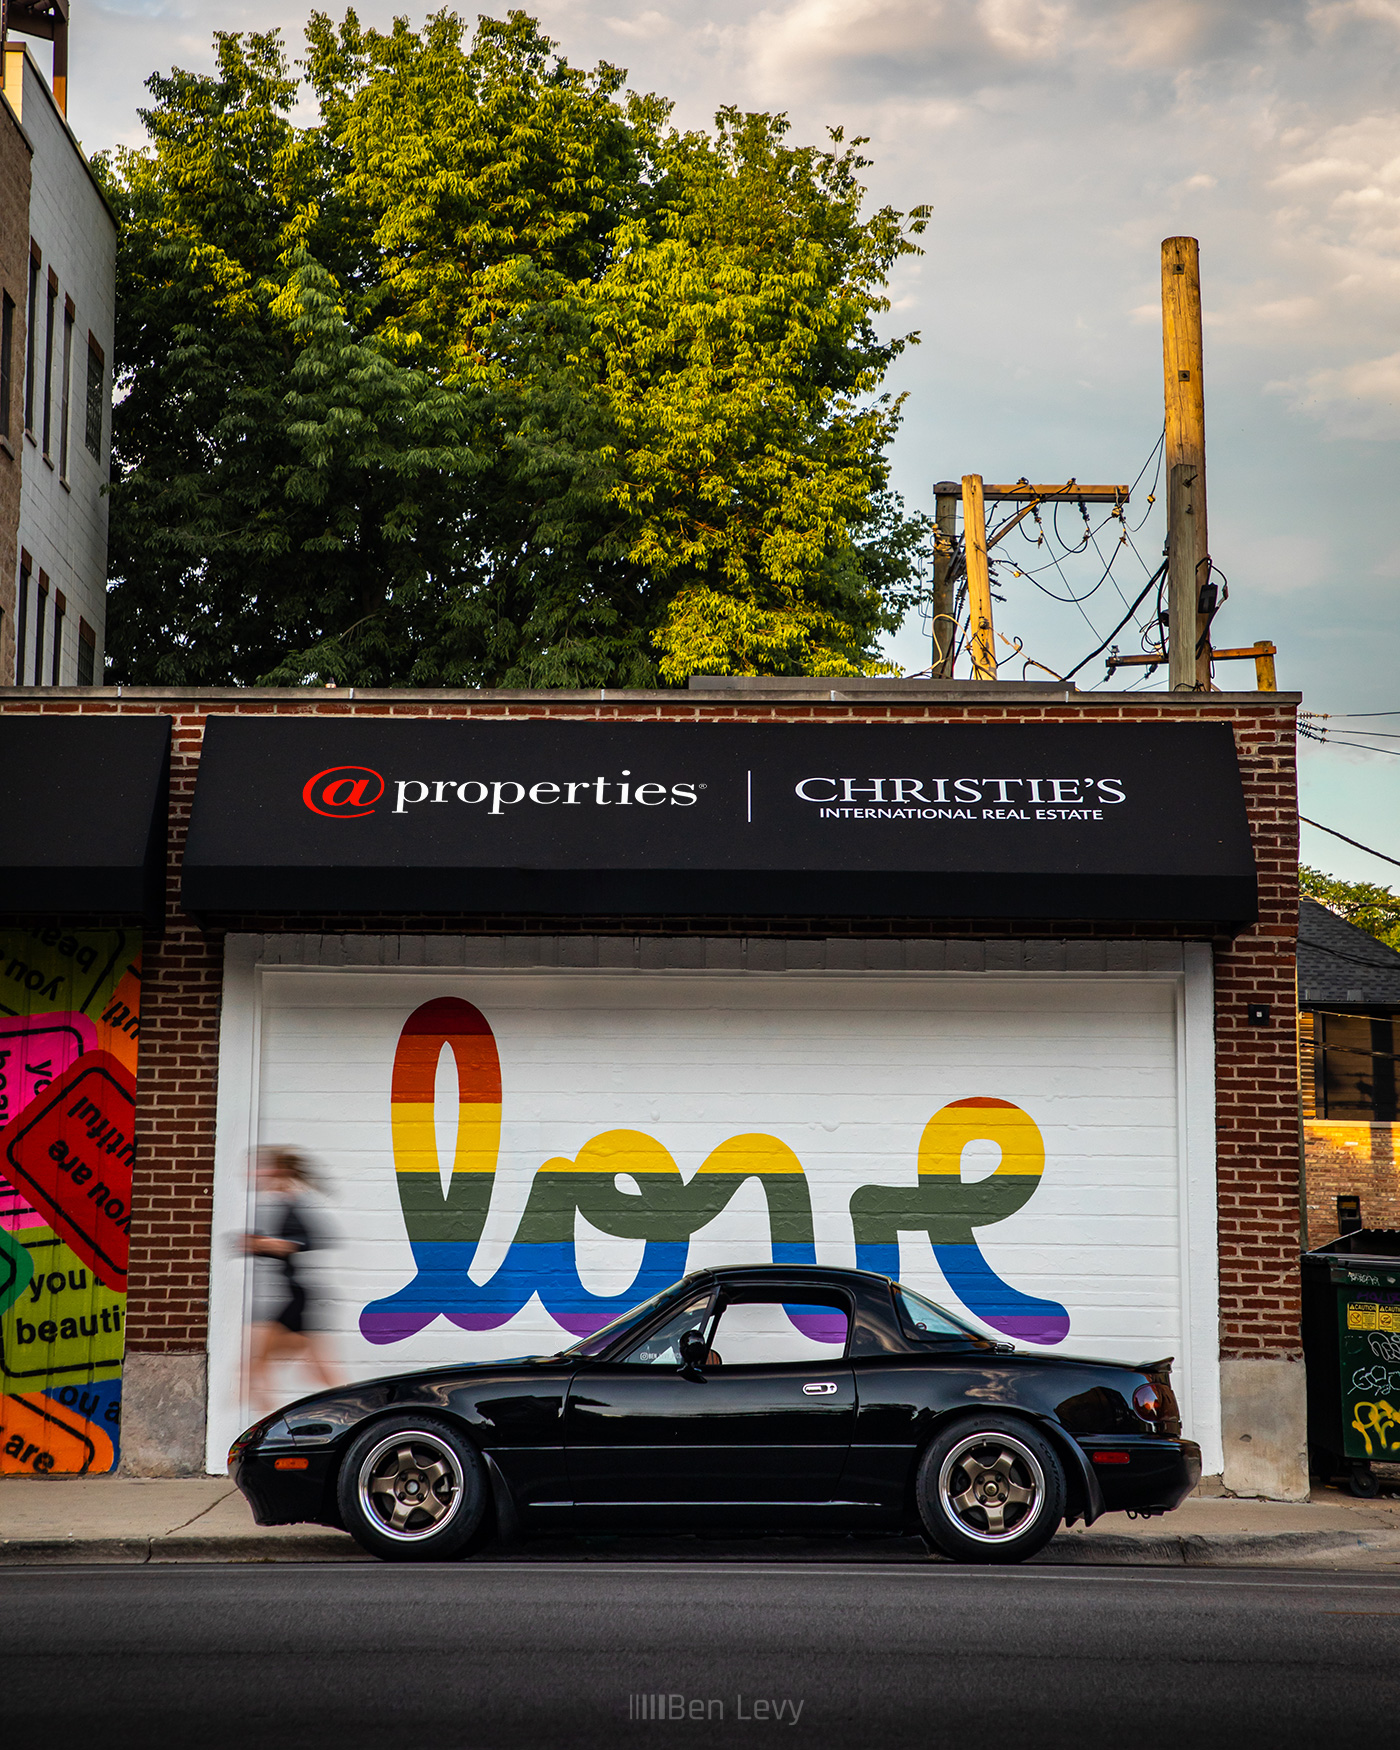 Black Miata in front of Love mural in Chicago